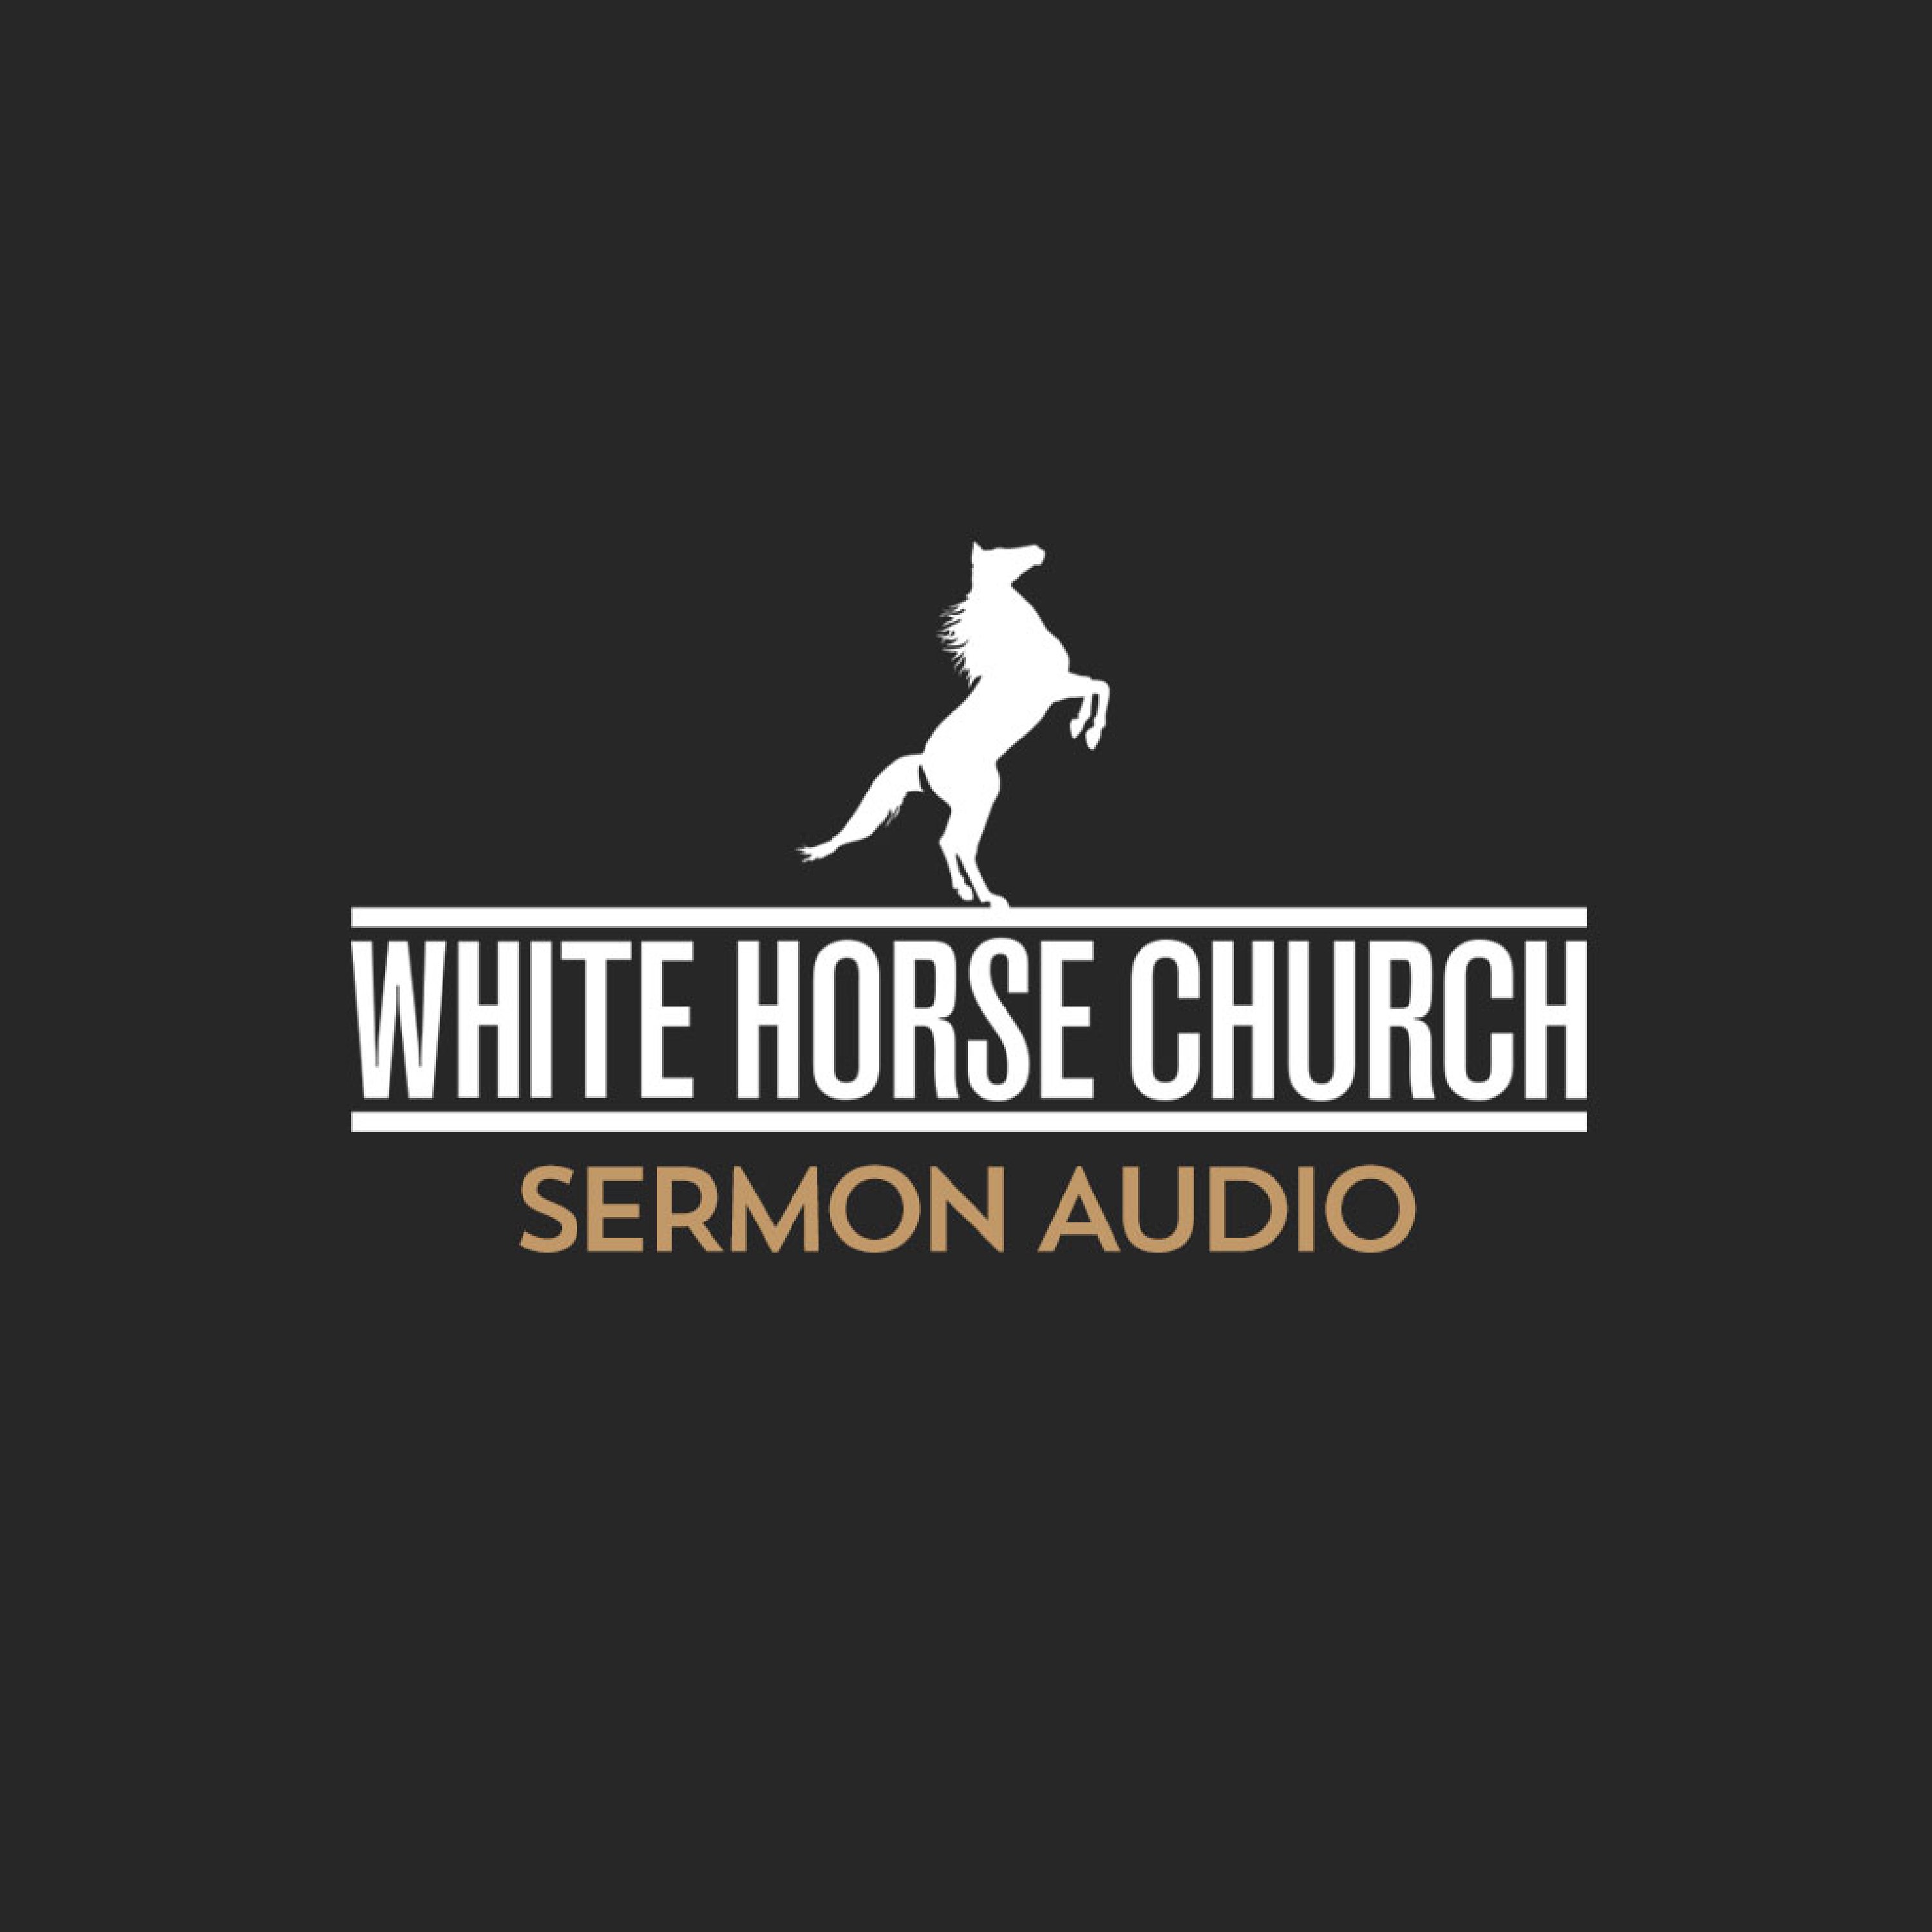 White Horse Church Sermon Audio